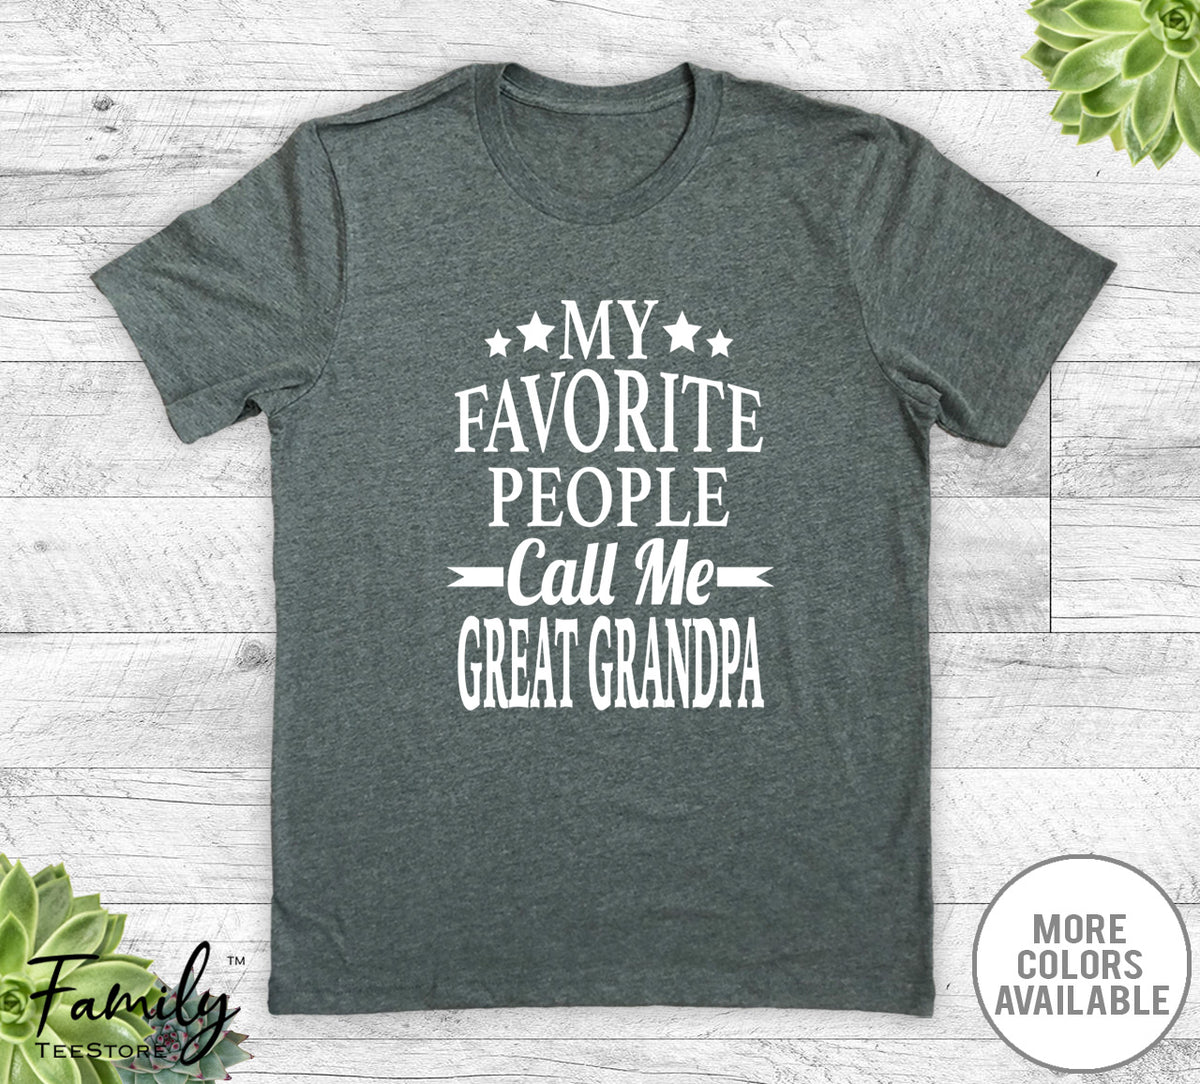 My Favorite People Call Me Great Grandpa - Unisex T-shirt - Great Grandpa Shirt - Great Grandpa Gift - familyteeprints